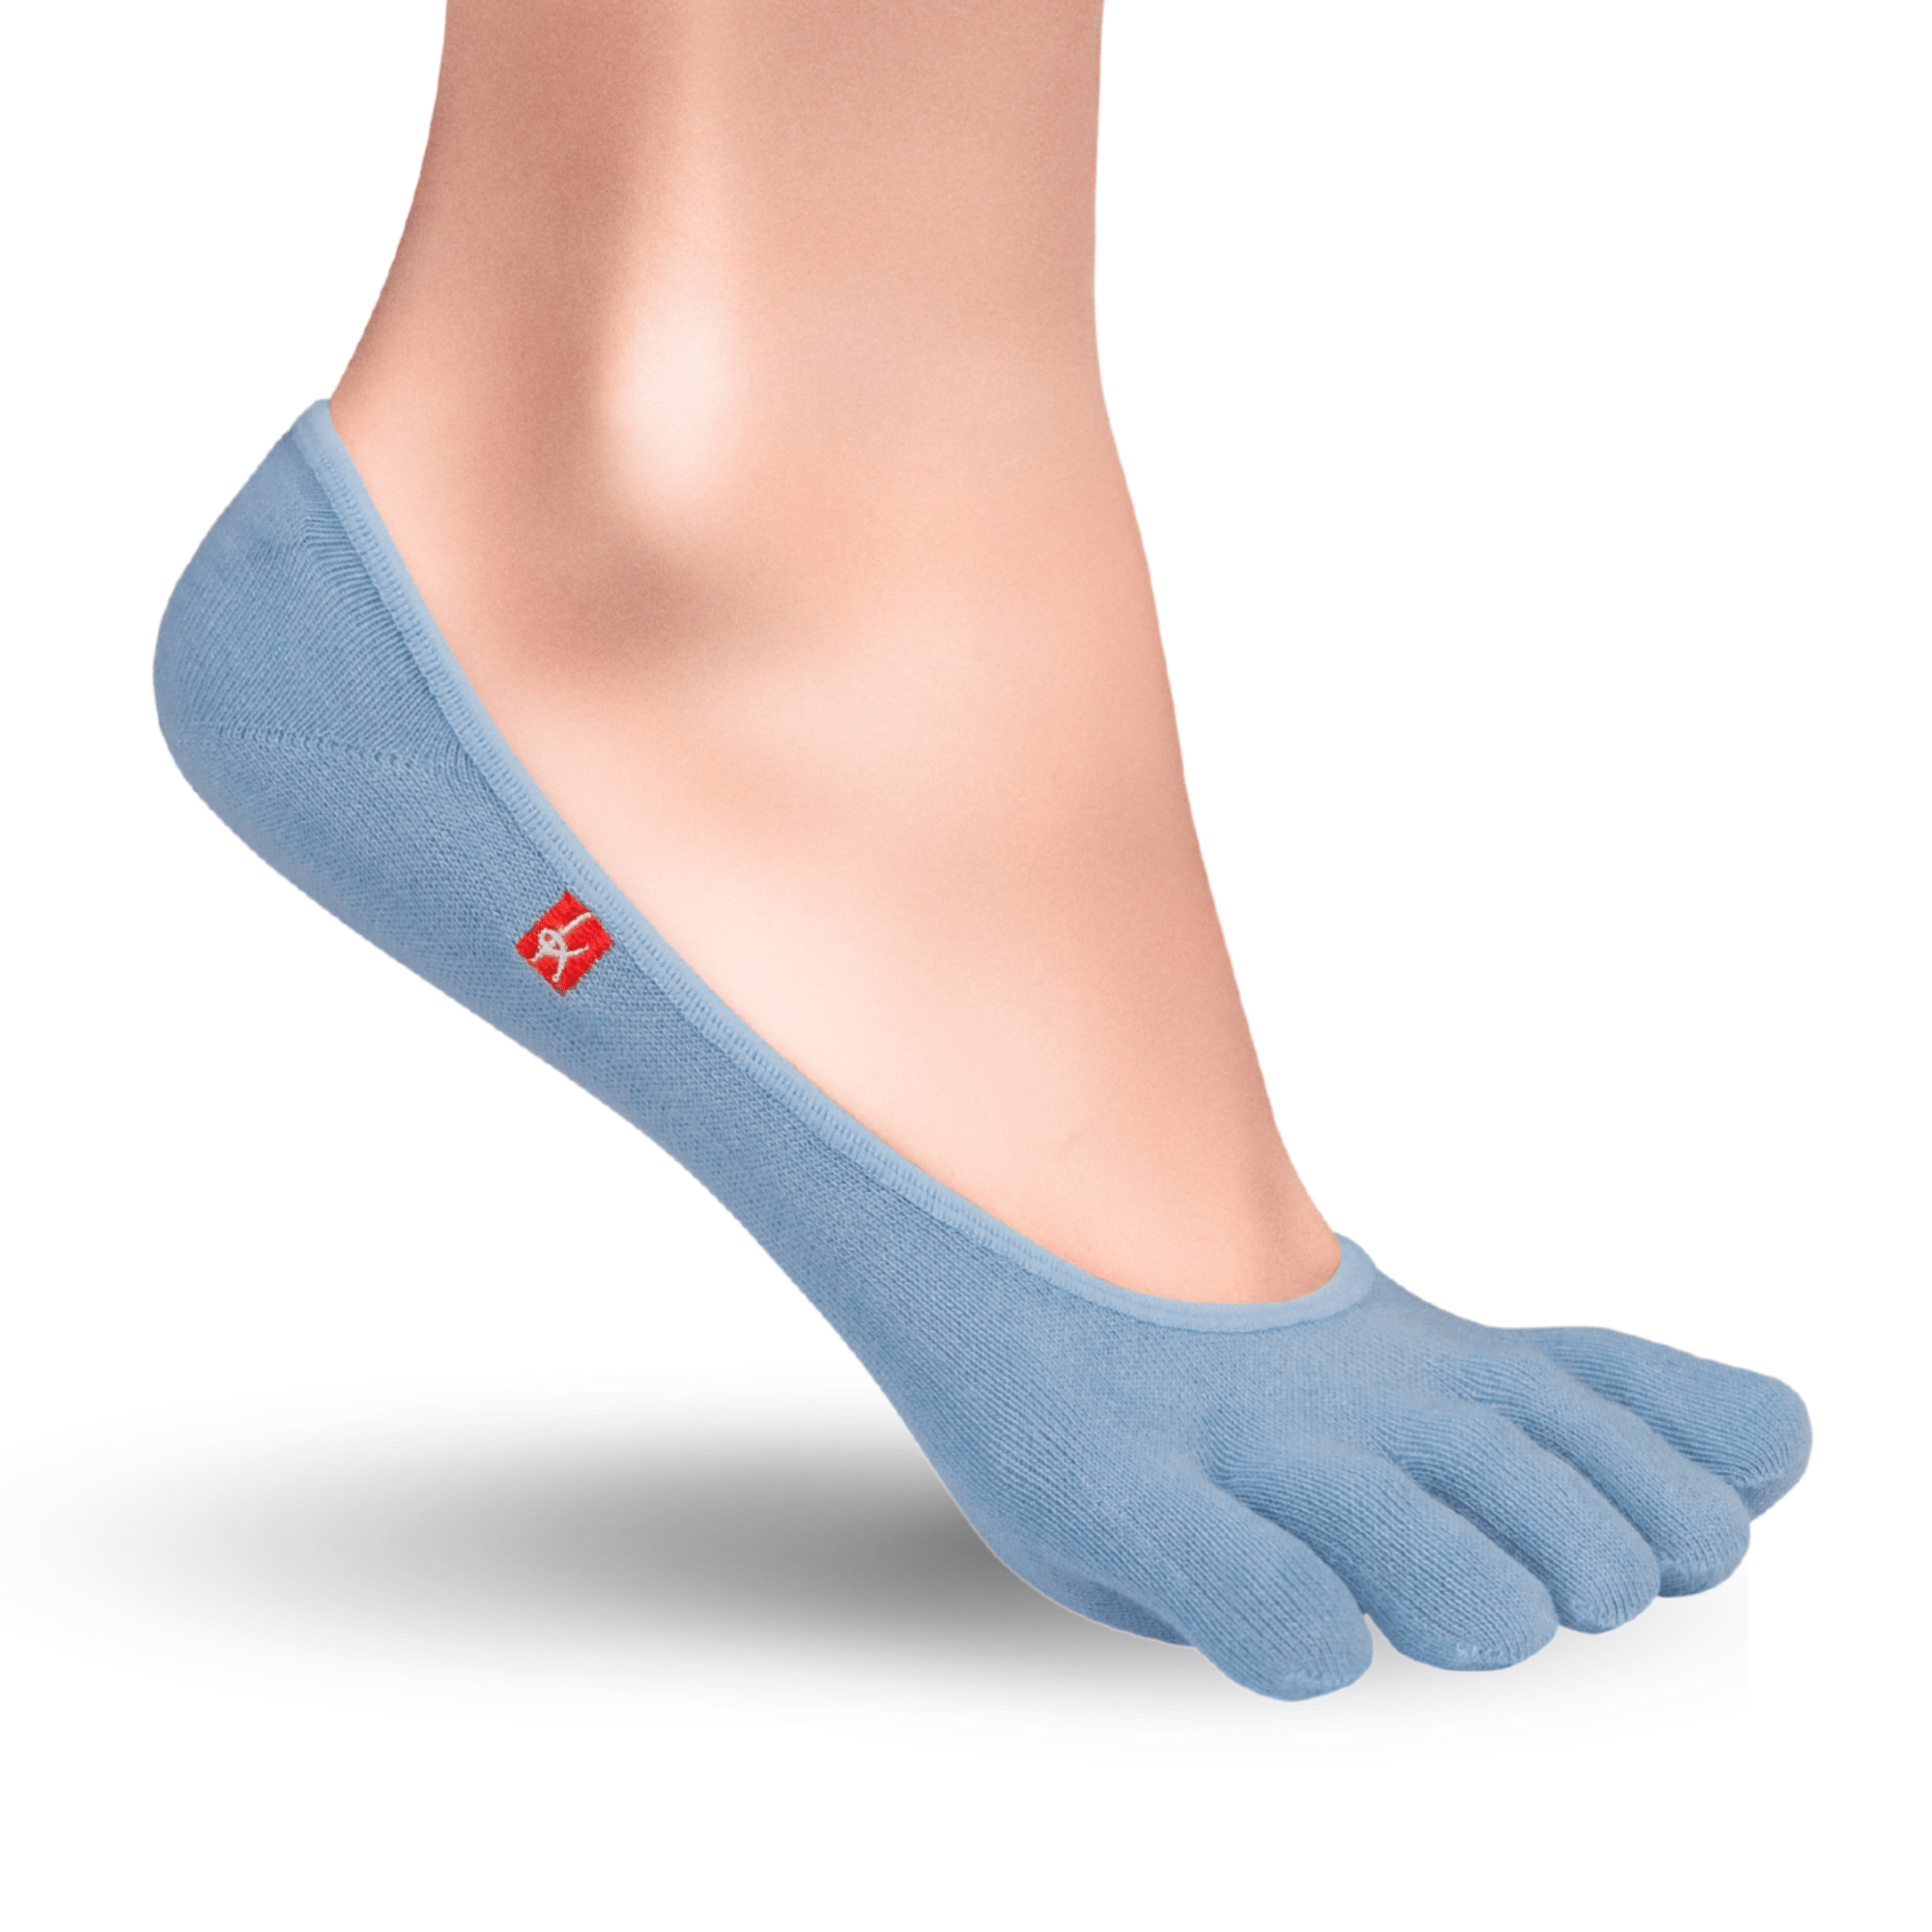 Knitido Zero Coolmax stivaletti a punta da donna calze con dita in blu chiaro